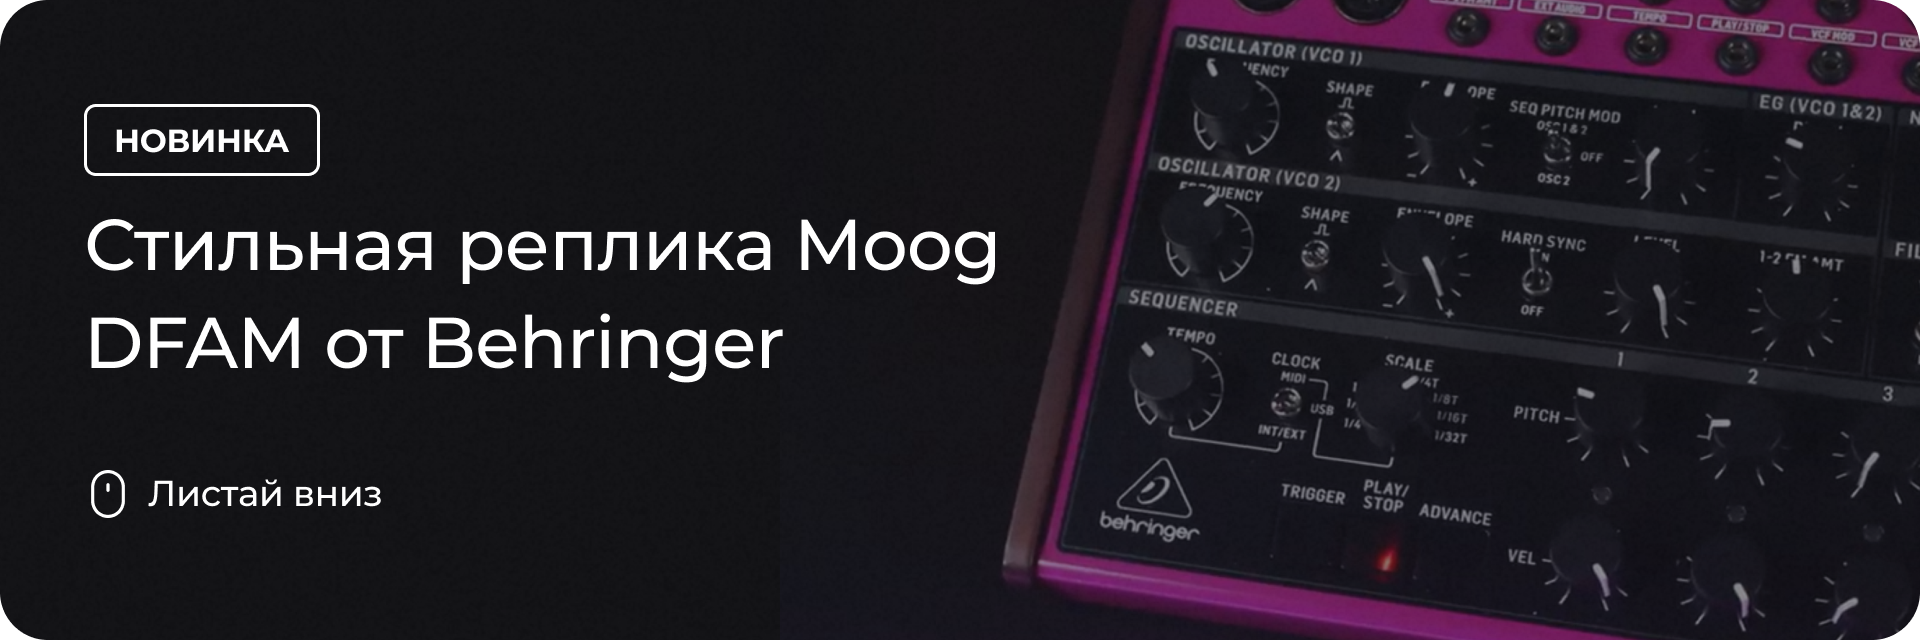 Стильная реплика Moog DFAM от Behringer